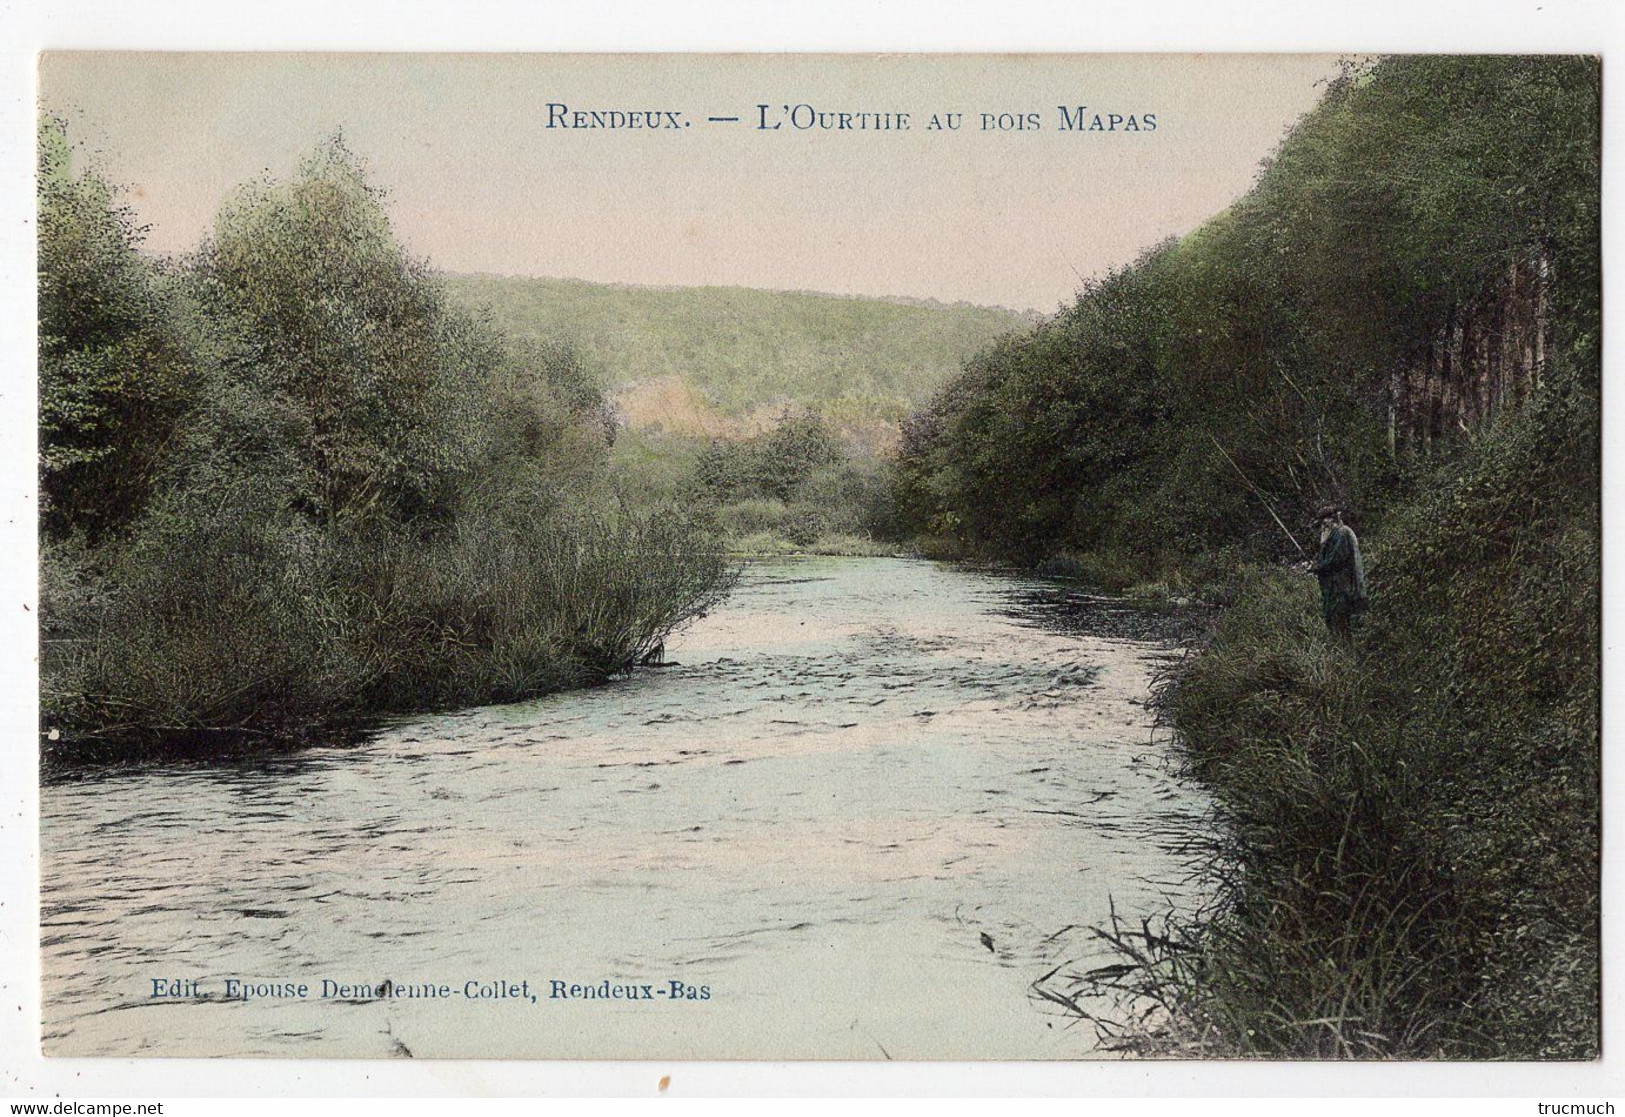 3 - RENDEUX - L'Ourthe Au Bois Mapas  *colorisée* Pêcheur à La Ligne* - Rendeux